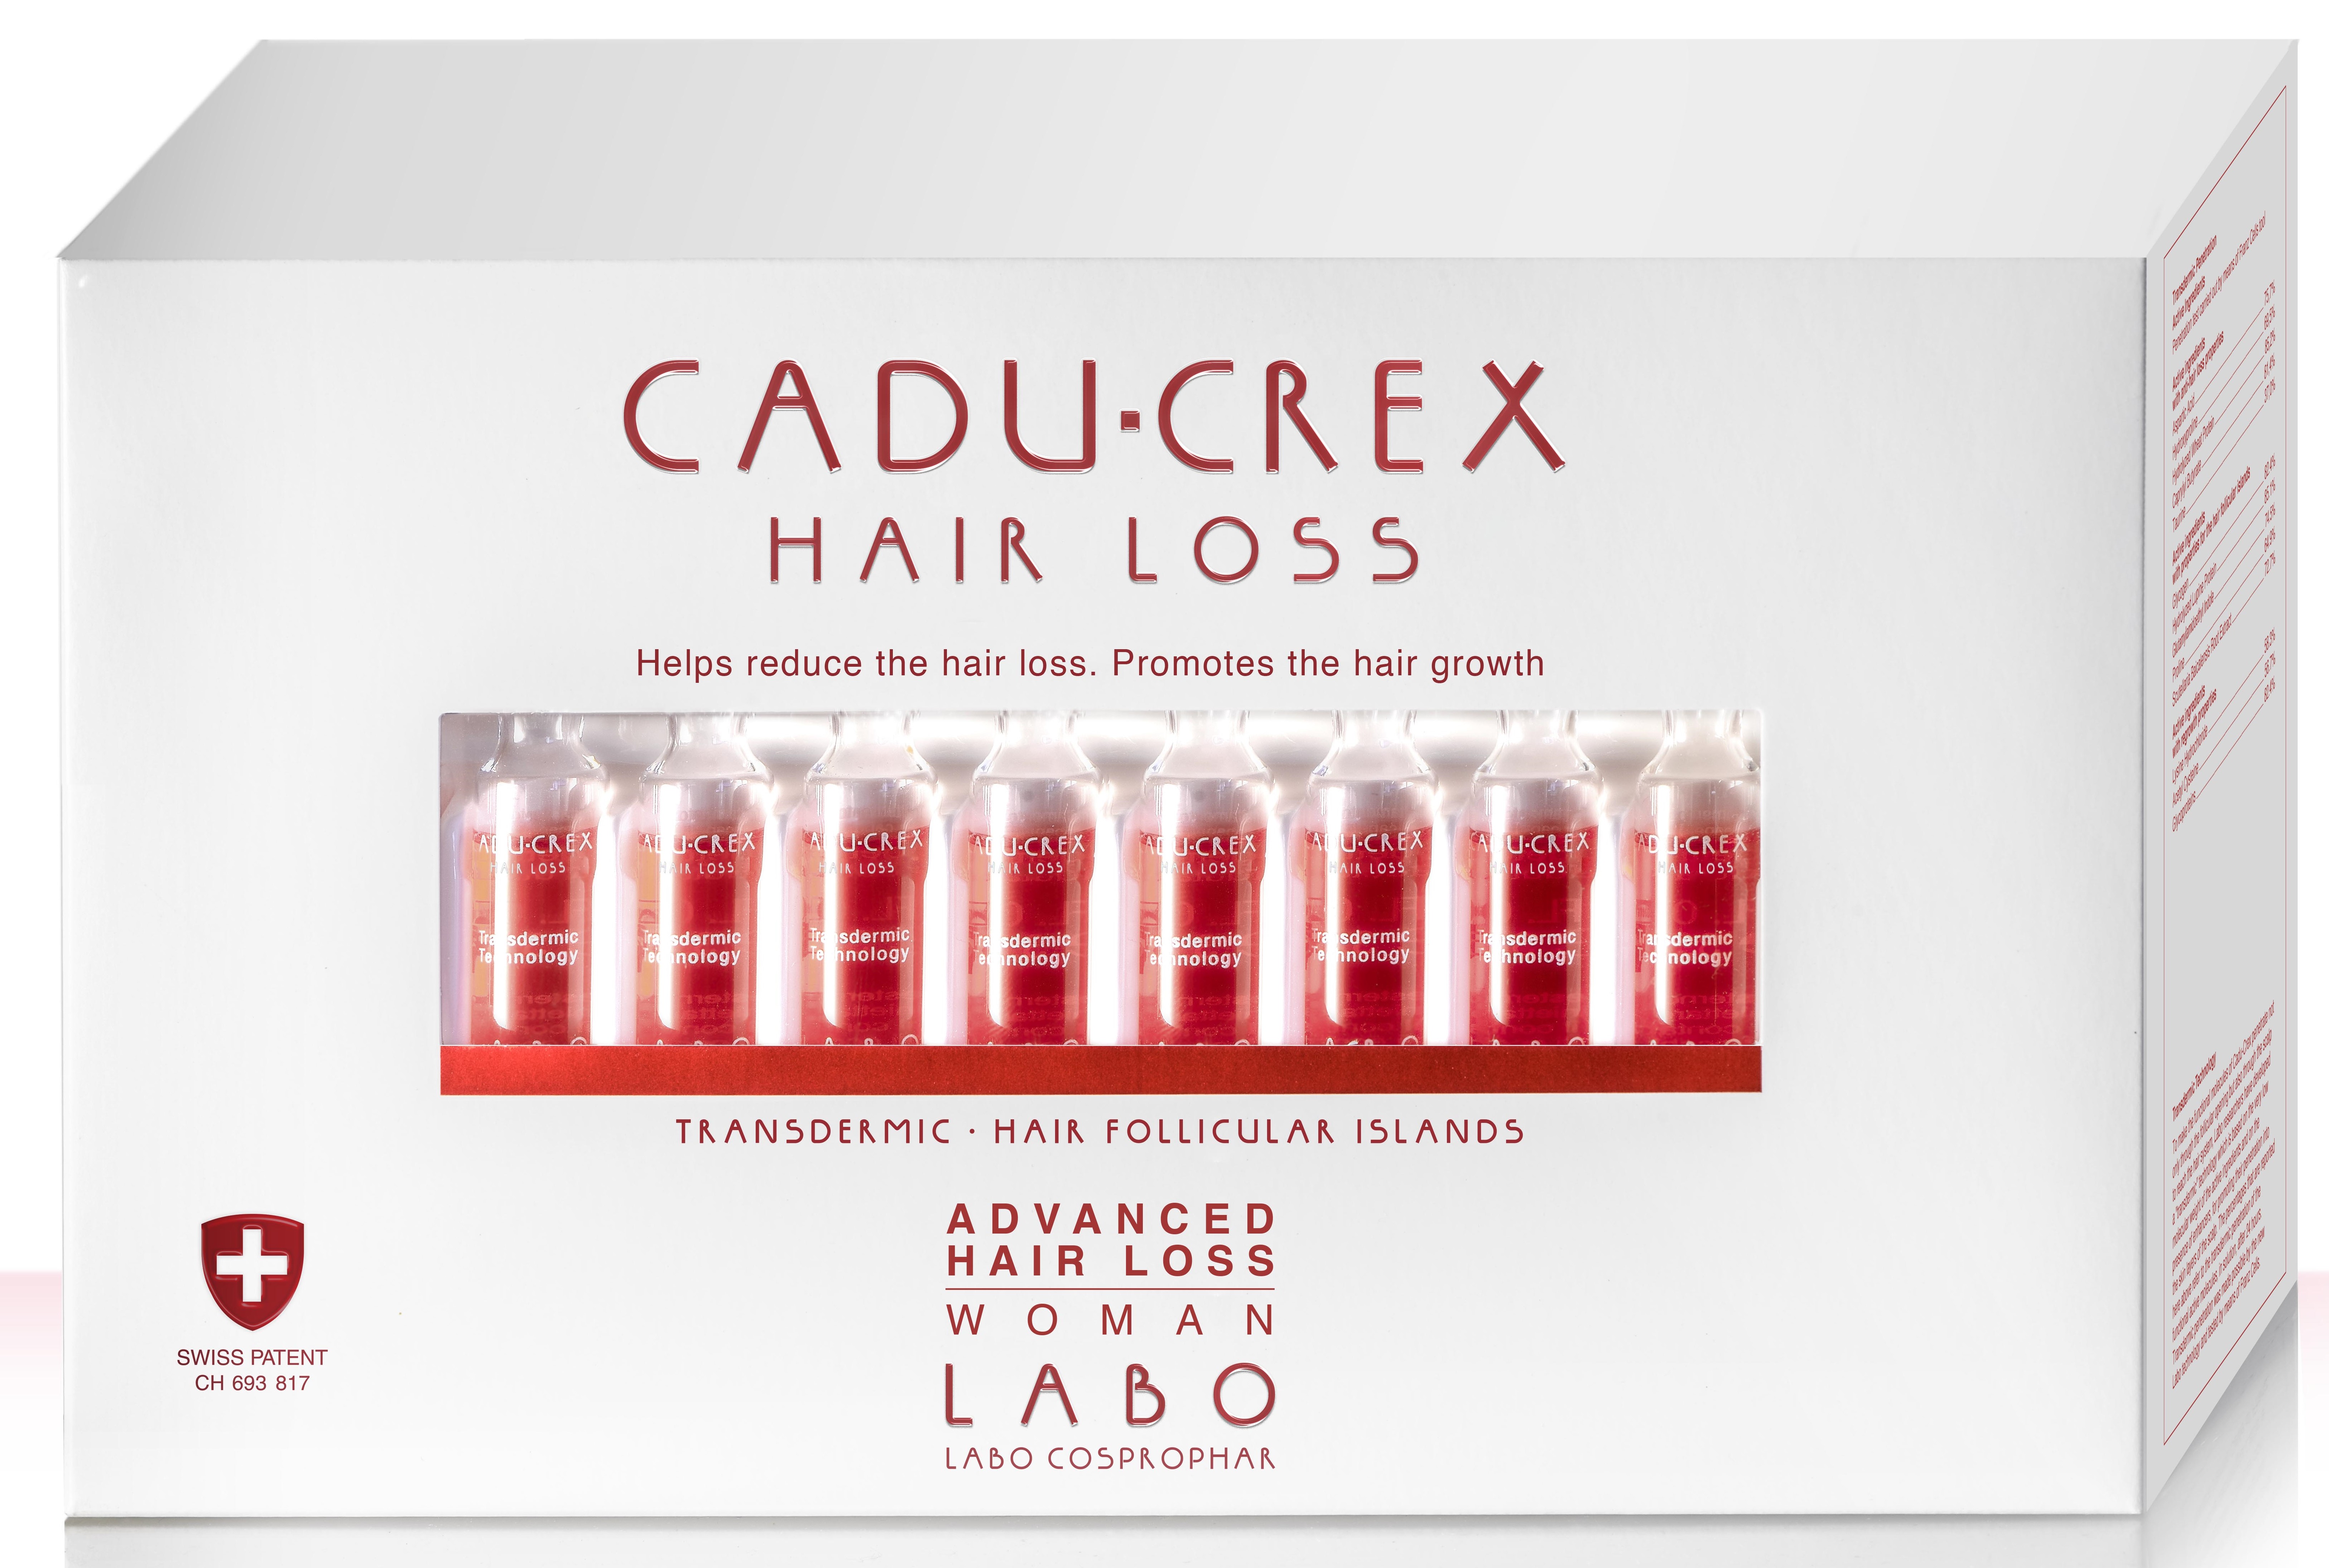 ходосова александра диеты за и против Crescina Лосьон при средней стадии выпадения волос у женщин Advanced Hair Loss, №40 (Crescina, Cadu-Crex)